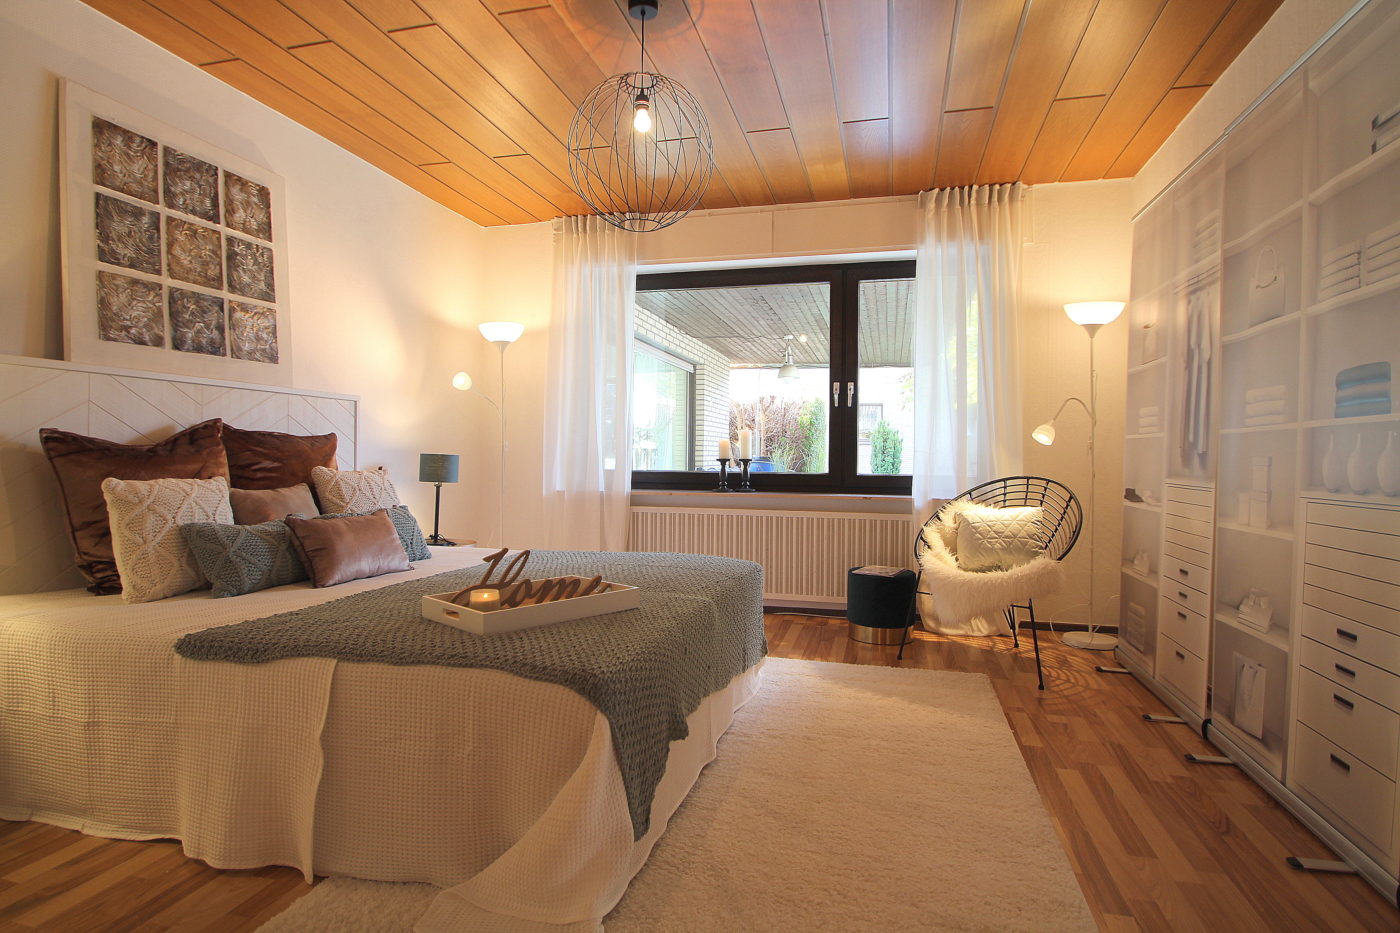 Schlafzimmer nach dem Homestaging durch Nicole Biernath von Blickfang Homestaging in Soest